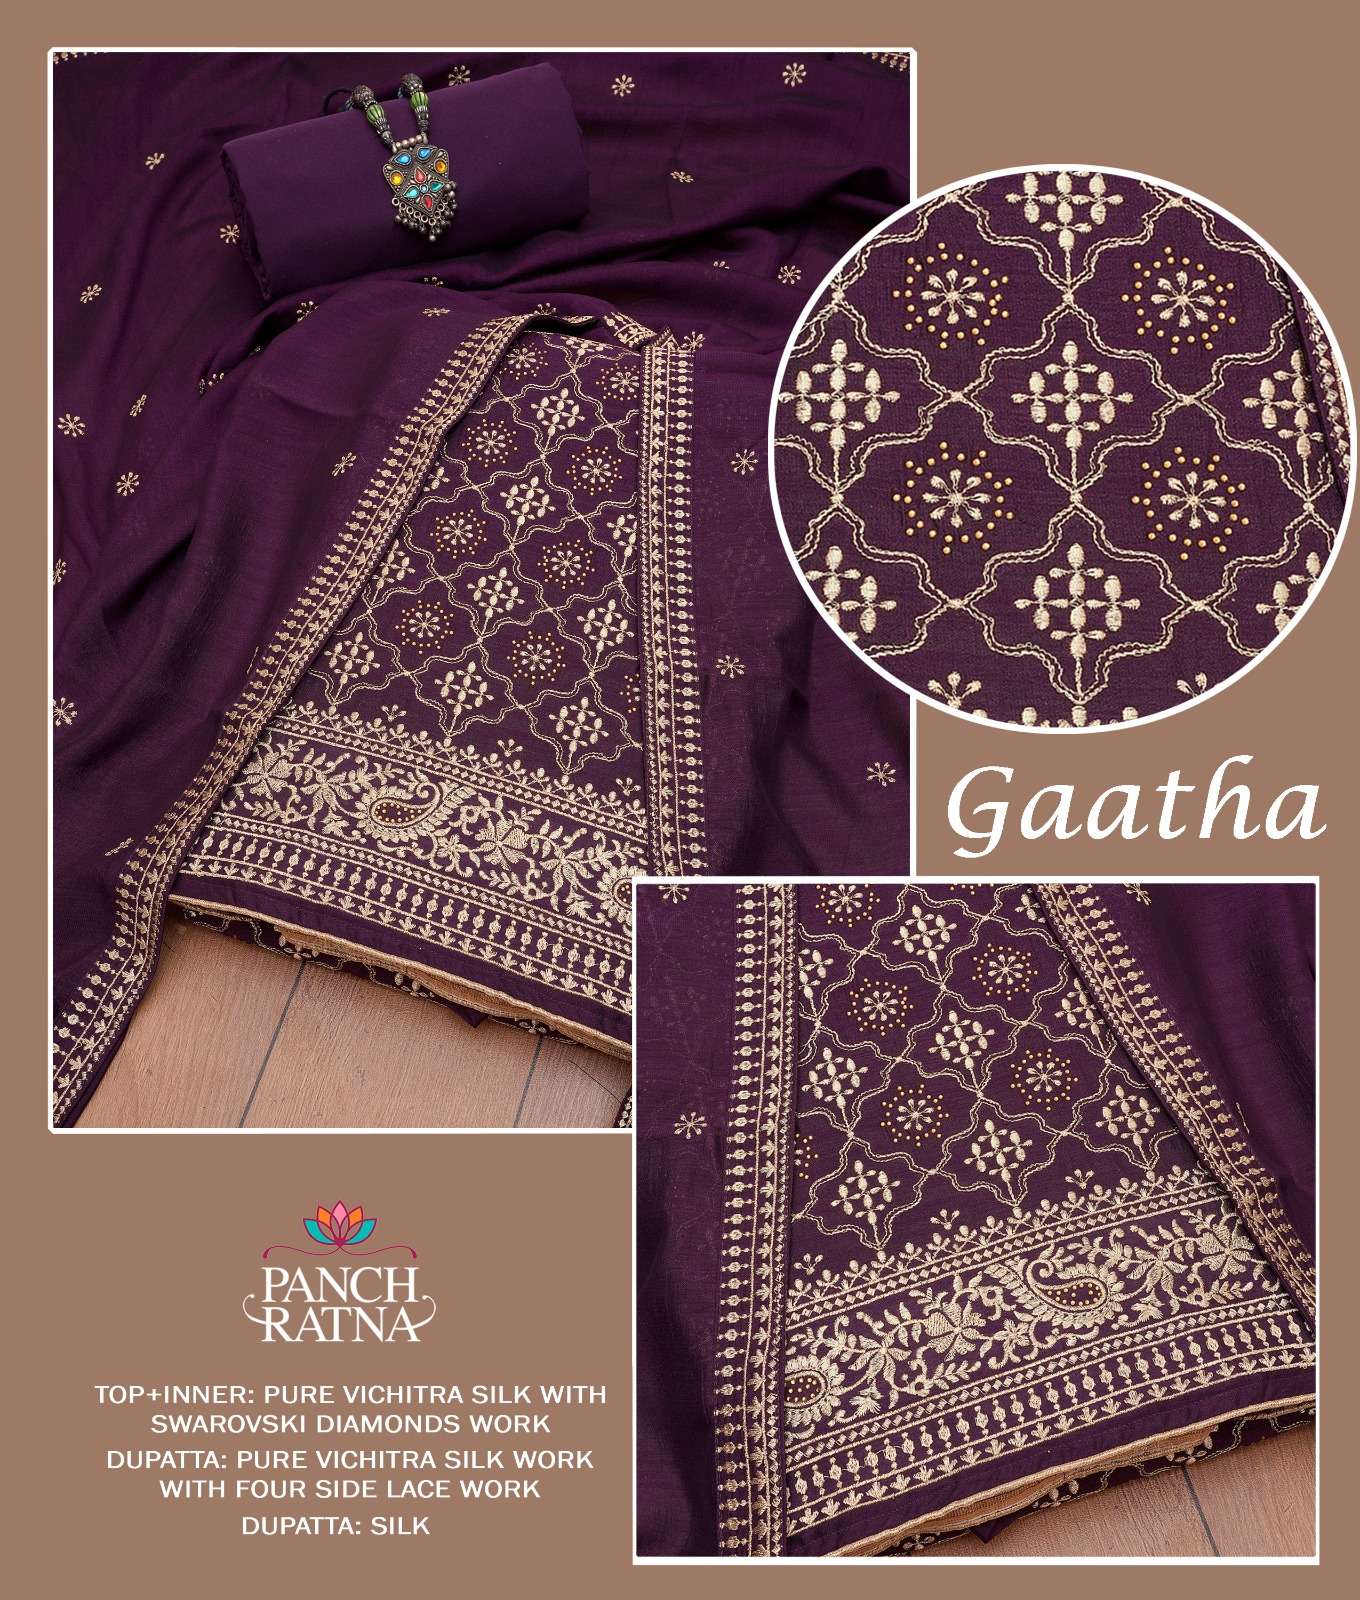 Panch Ratna Gaatha Silk Salwar Suit Catalog Wholesaler